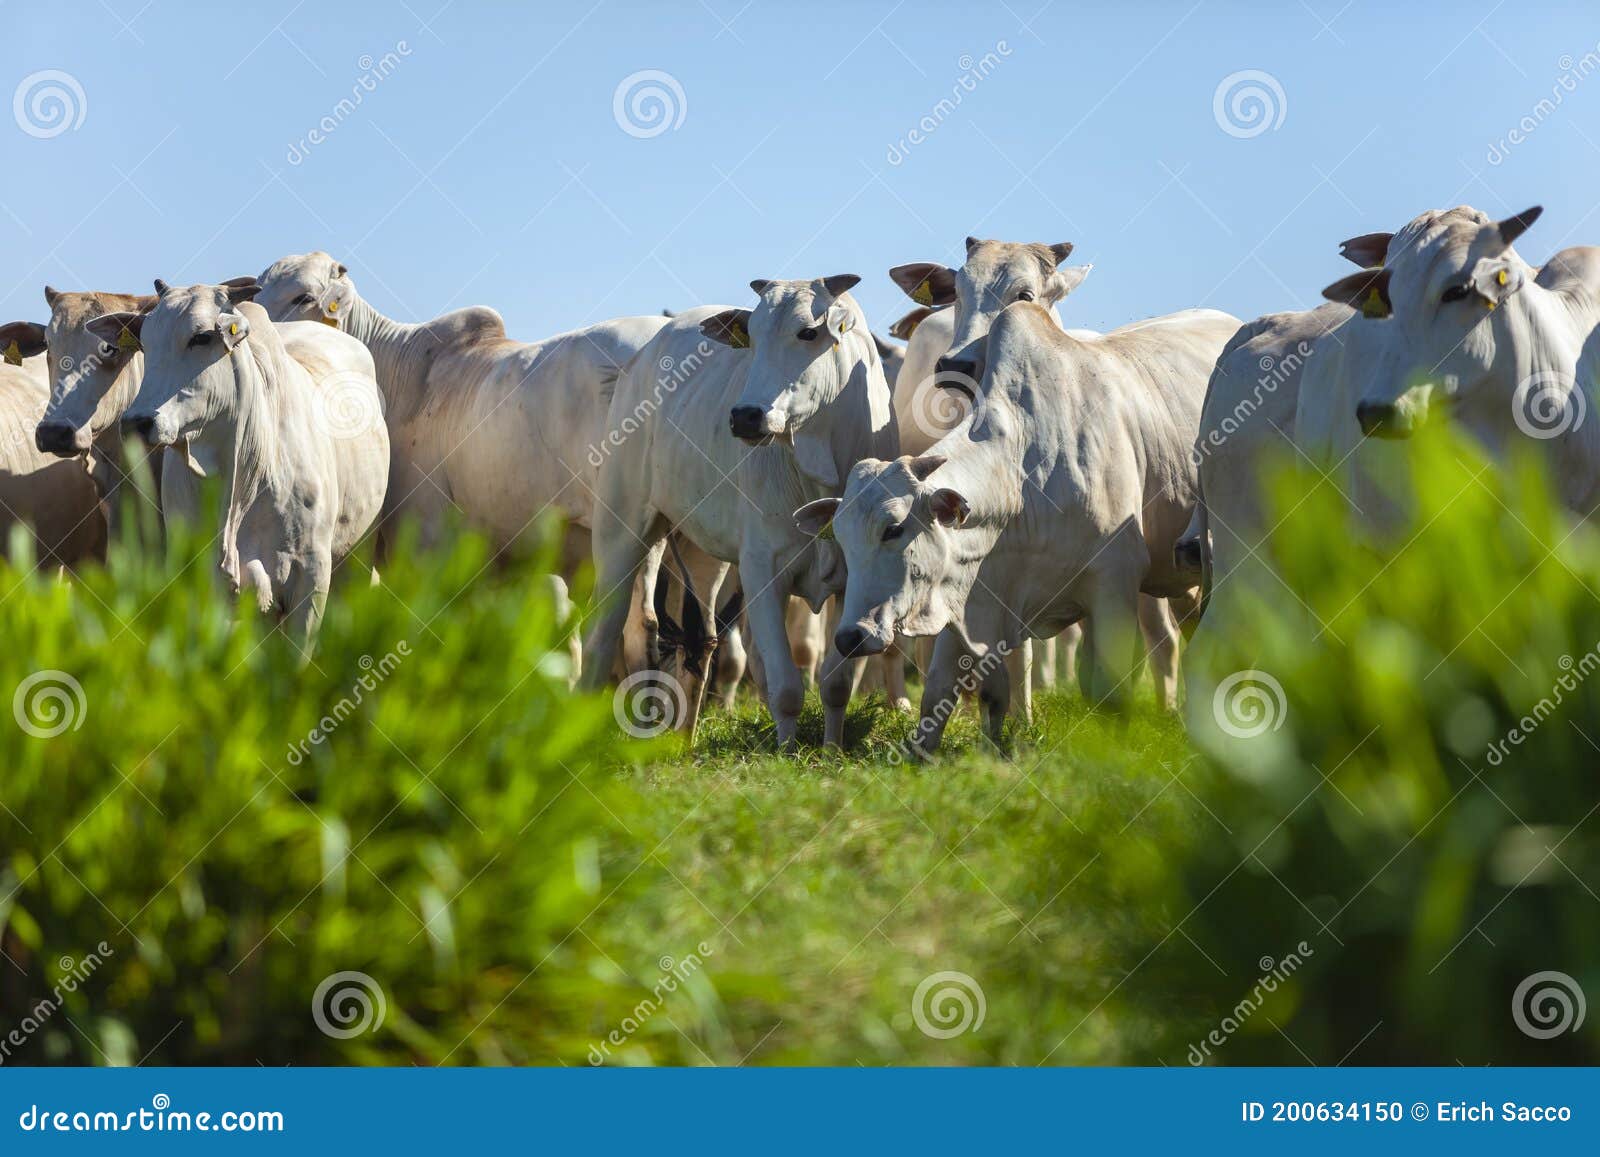 beautiful herd of nelore cattle, mato grosso do sul, brazil